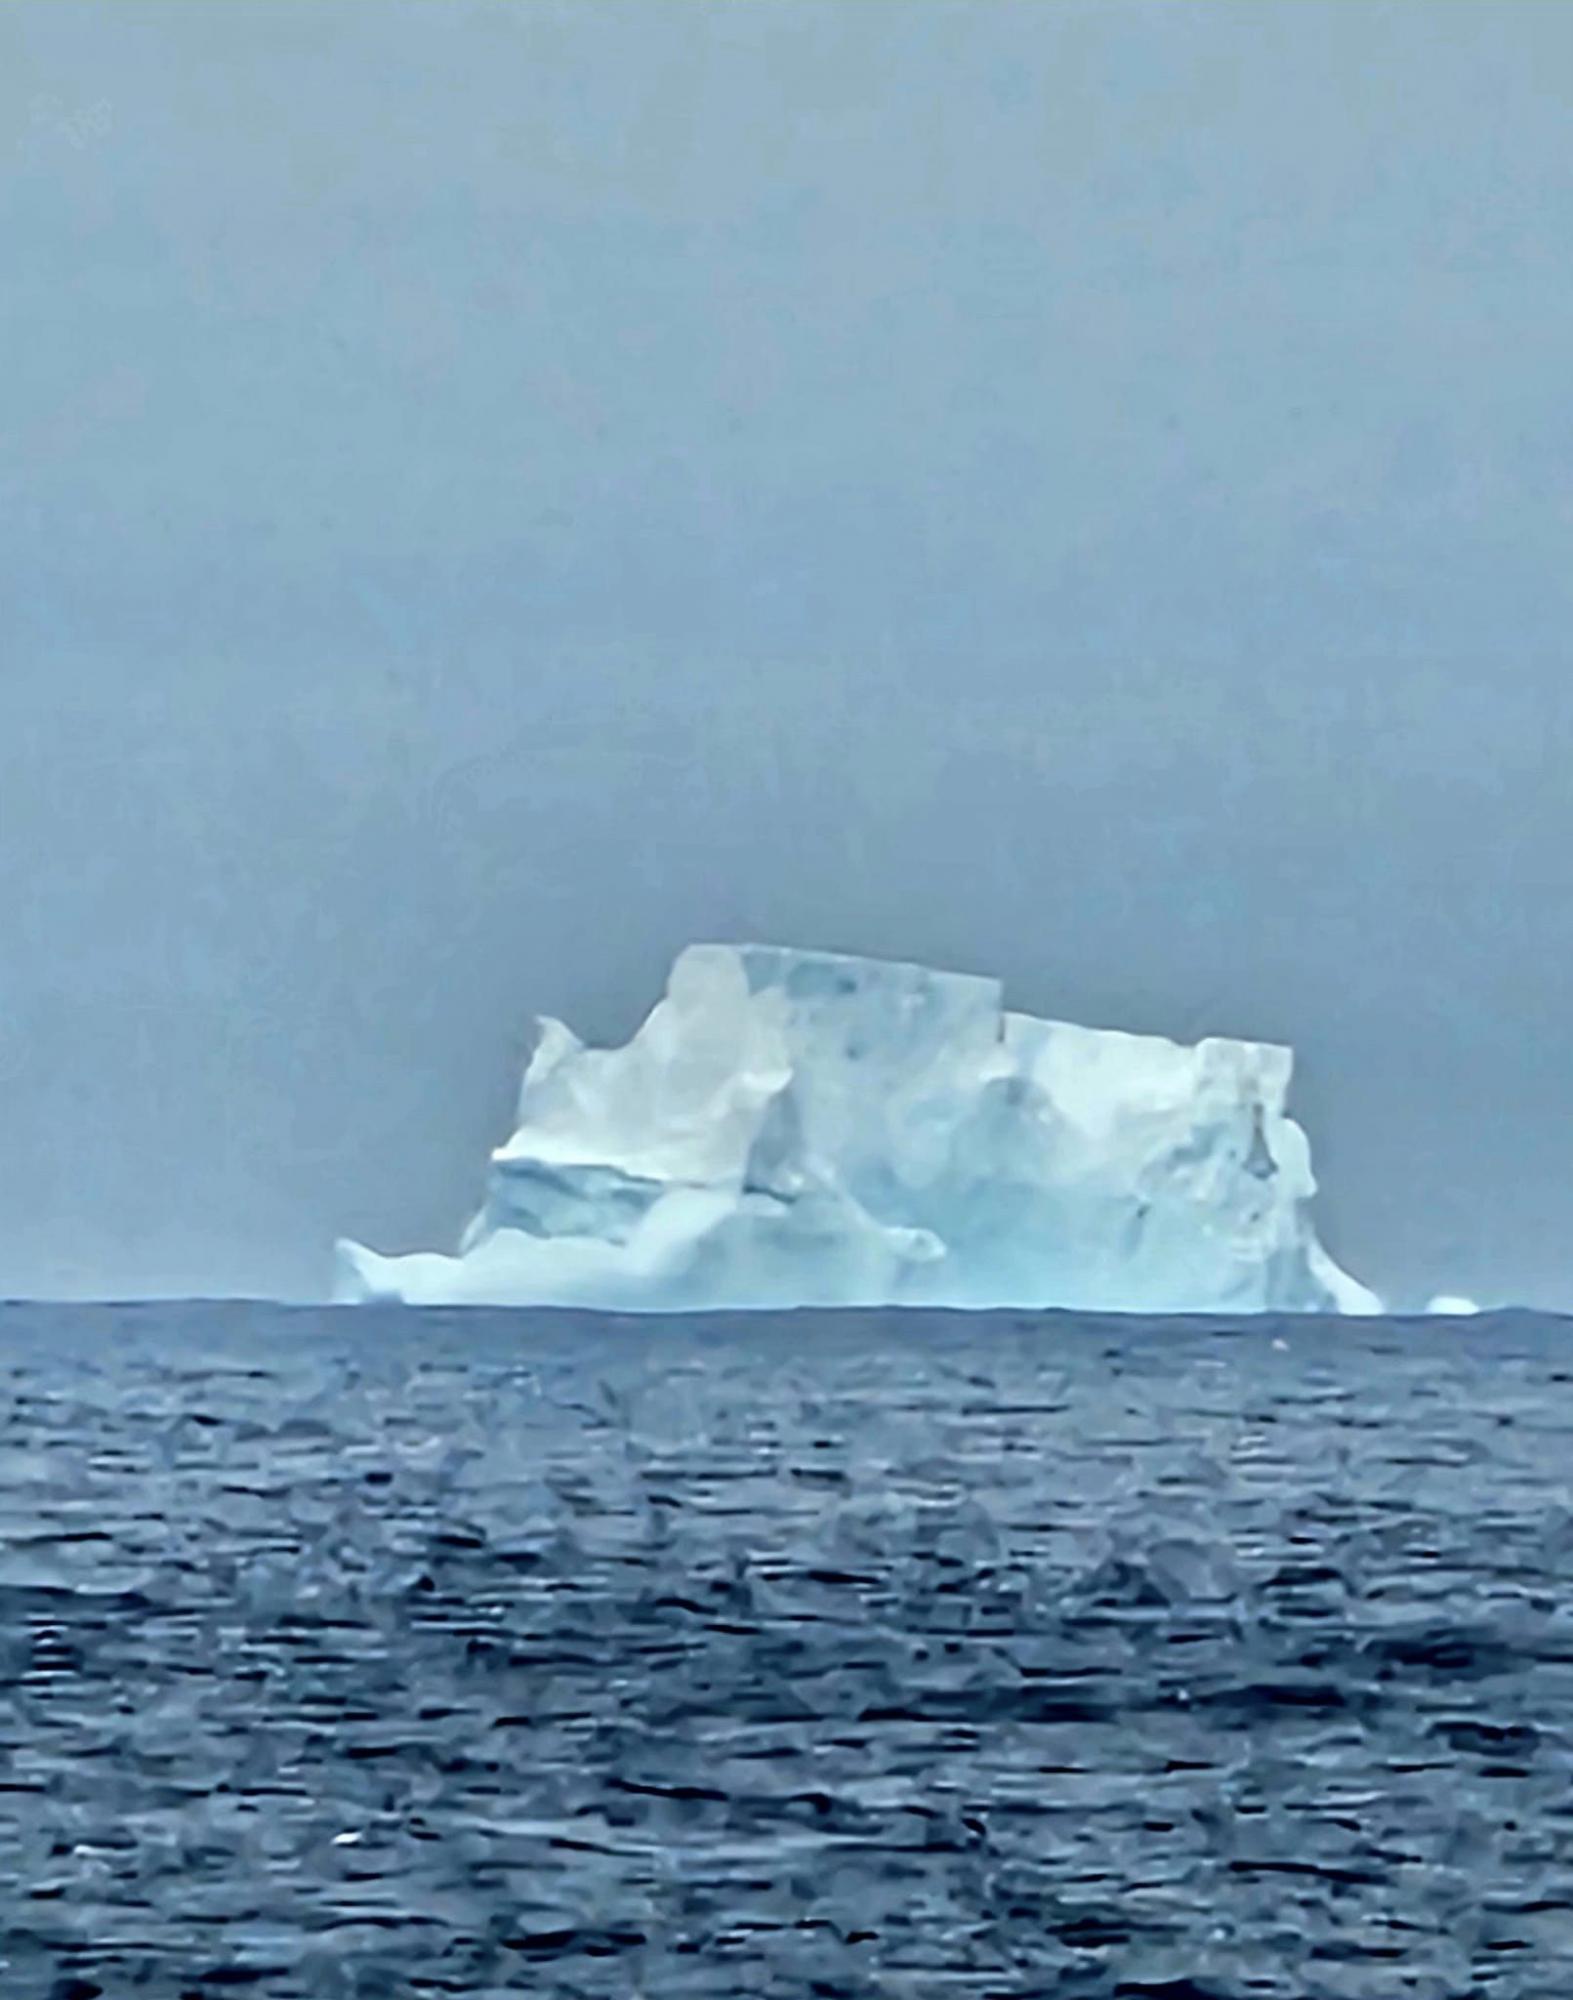 Українські полярники показали величезний айсберг в Антарктиці: неймовірні фото